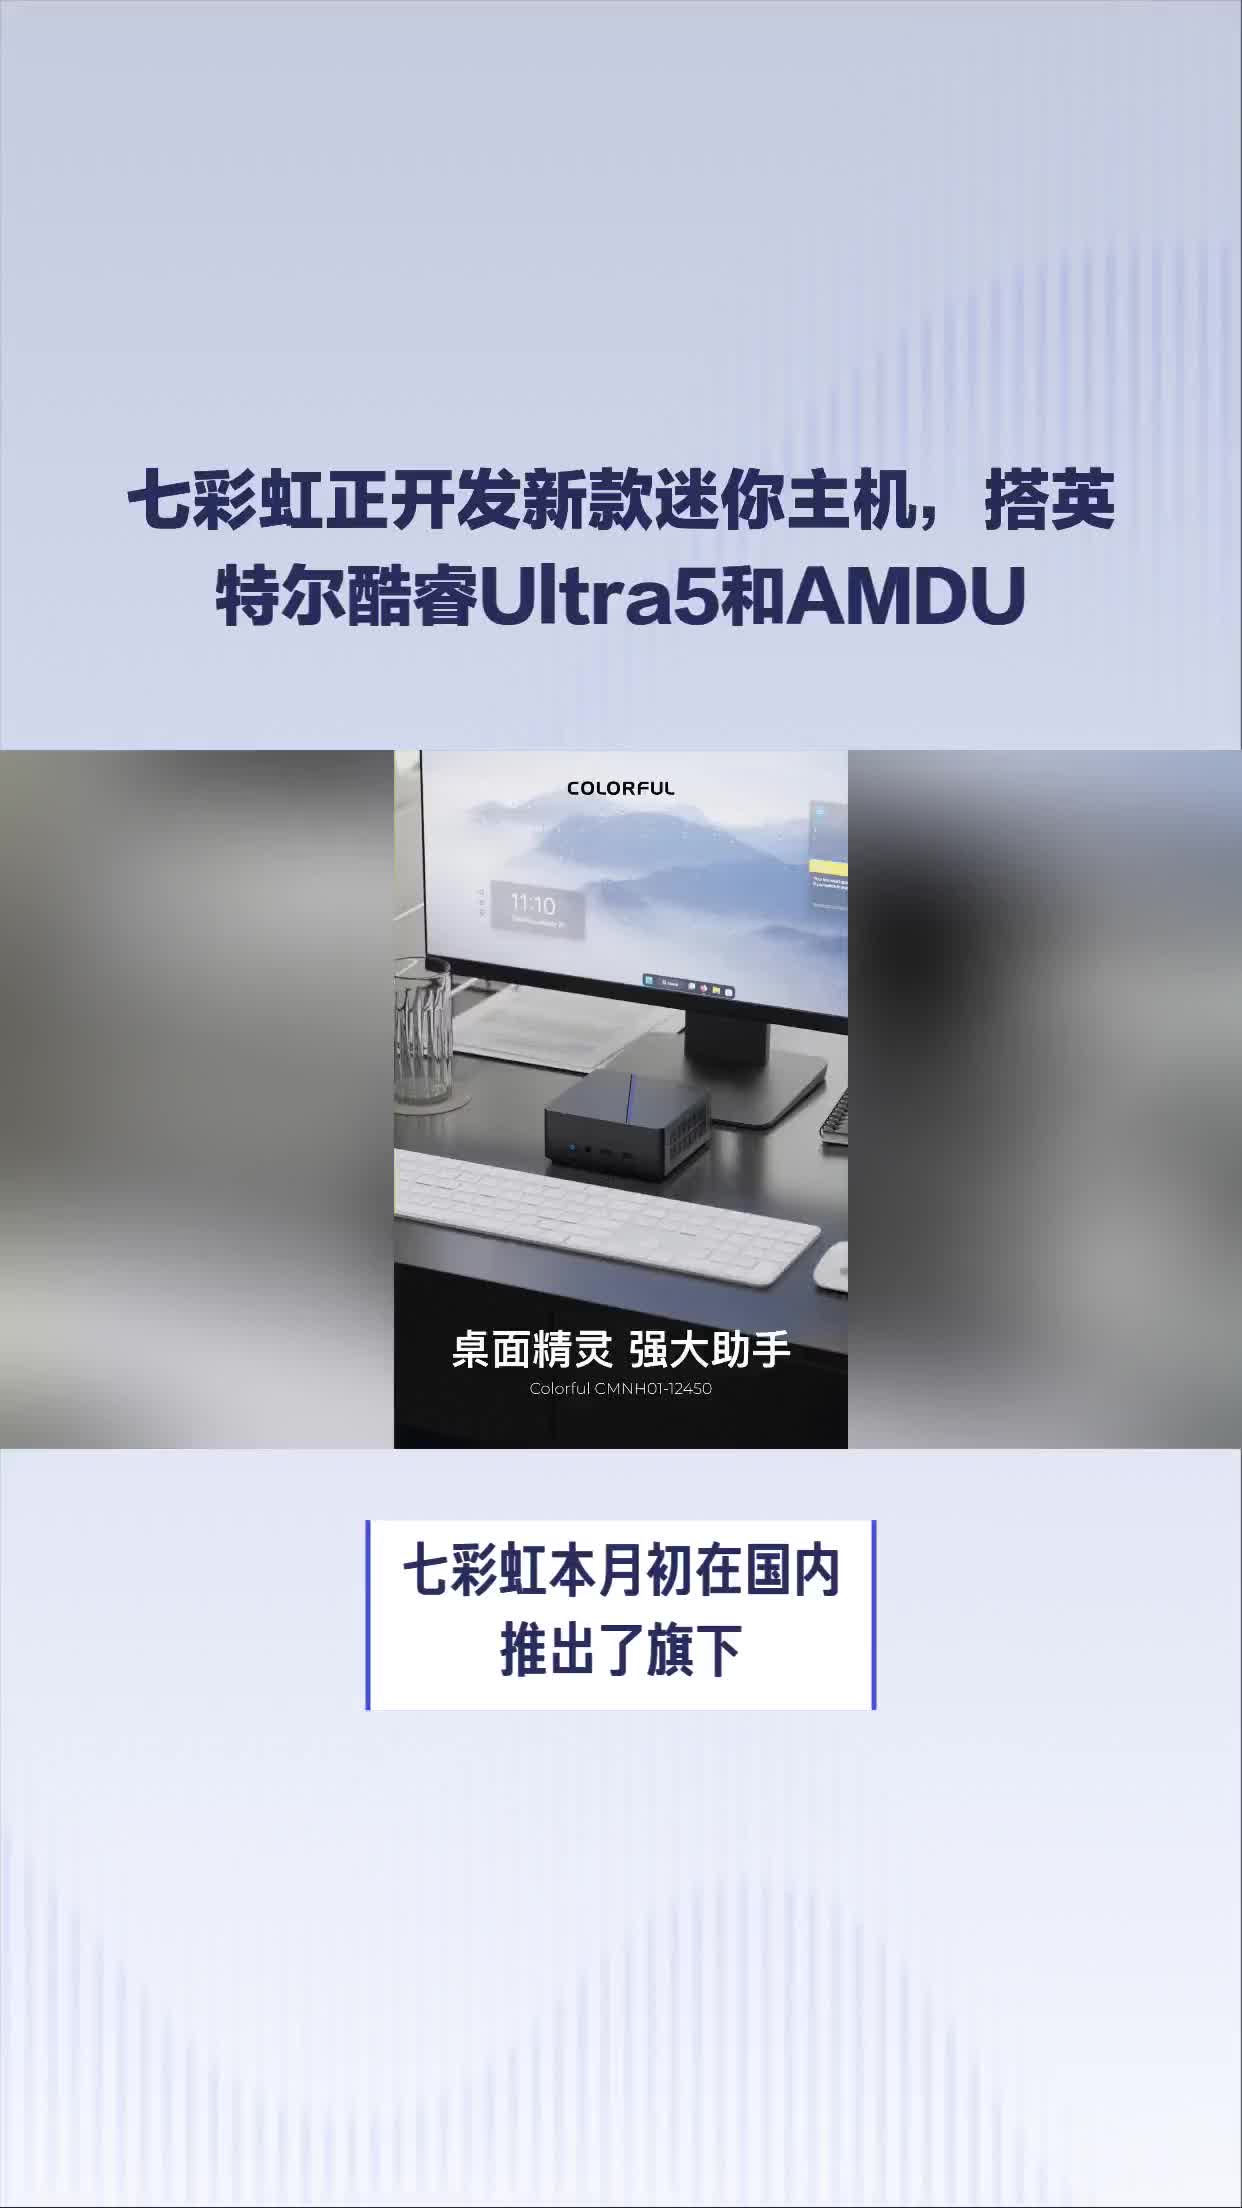 七彩虹正开发新款迷你主机，搭英特尔酷睿Ultra5和AMDU